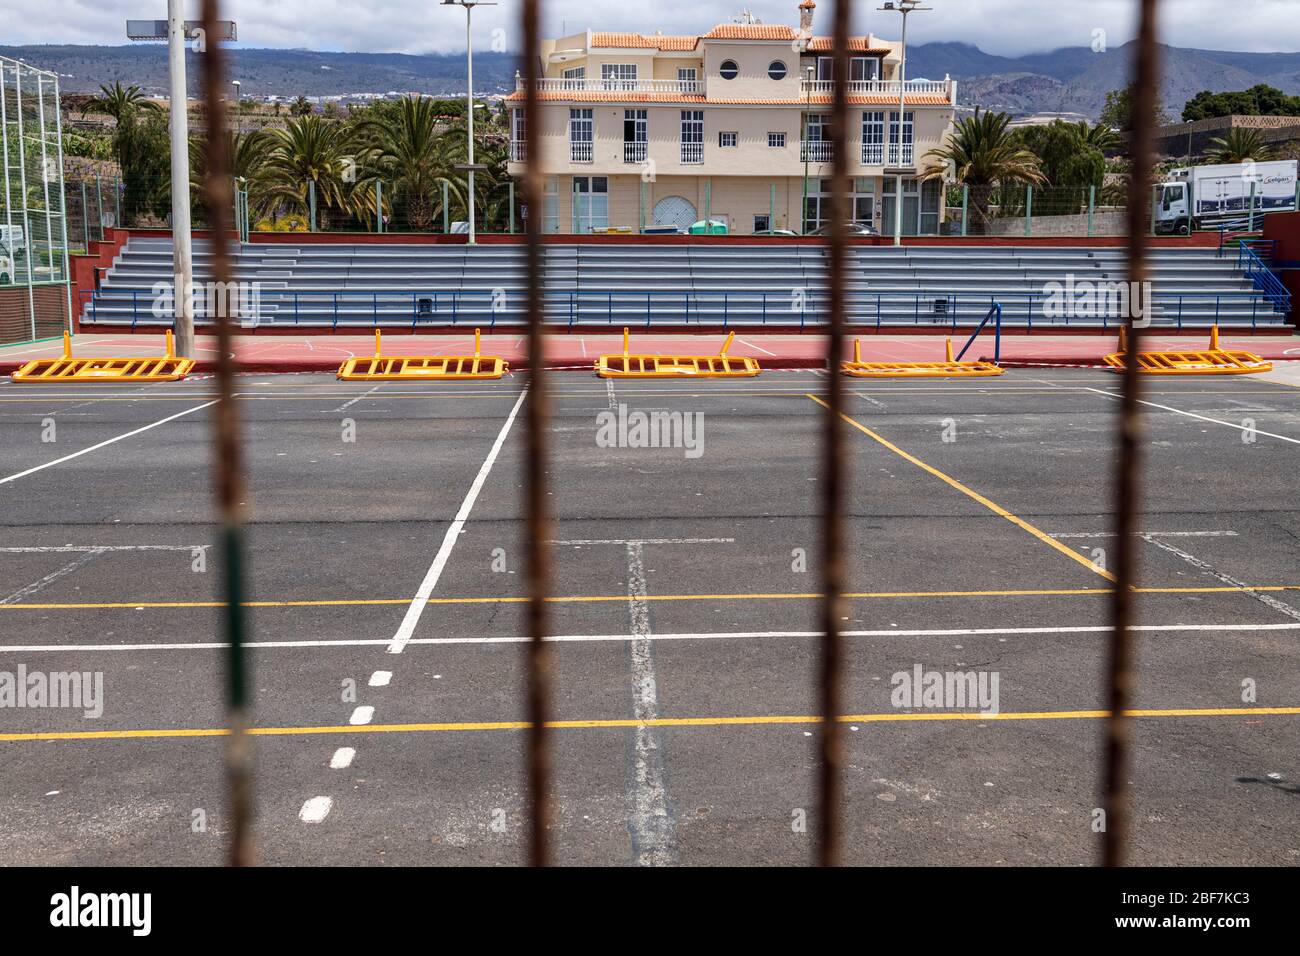 Terrains de sport fermés et vides, pendant la pandémie de coronavirus, Playa San Juan, Tenerife, îles Canaries, Espagne Banque D'Images